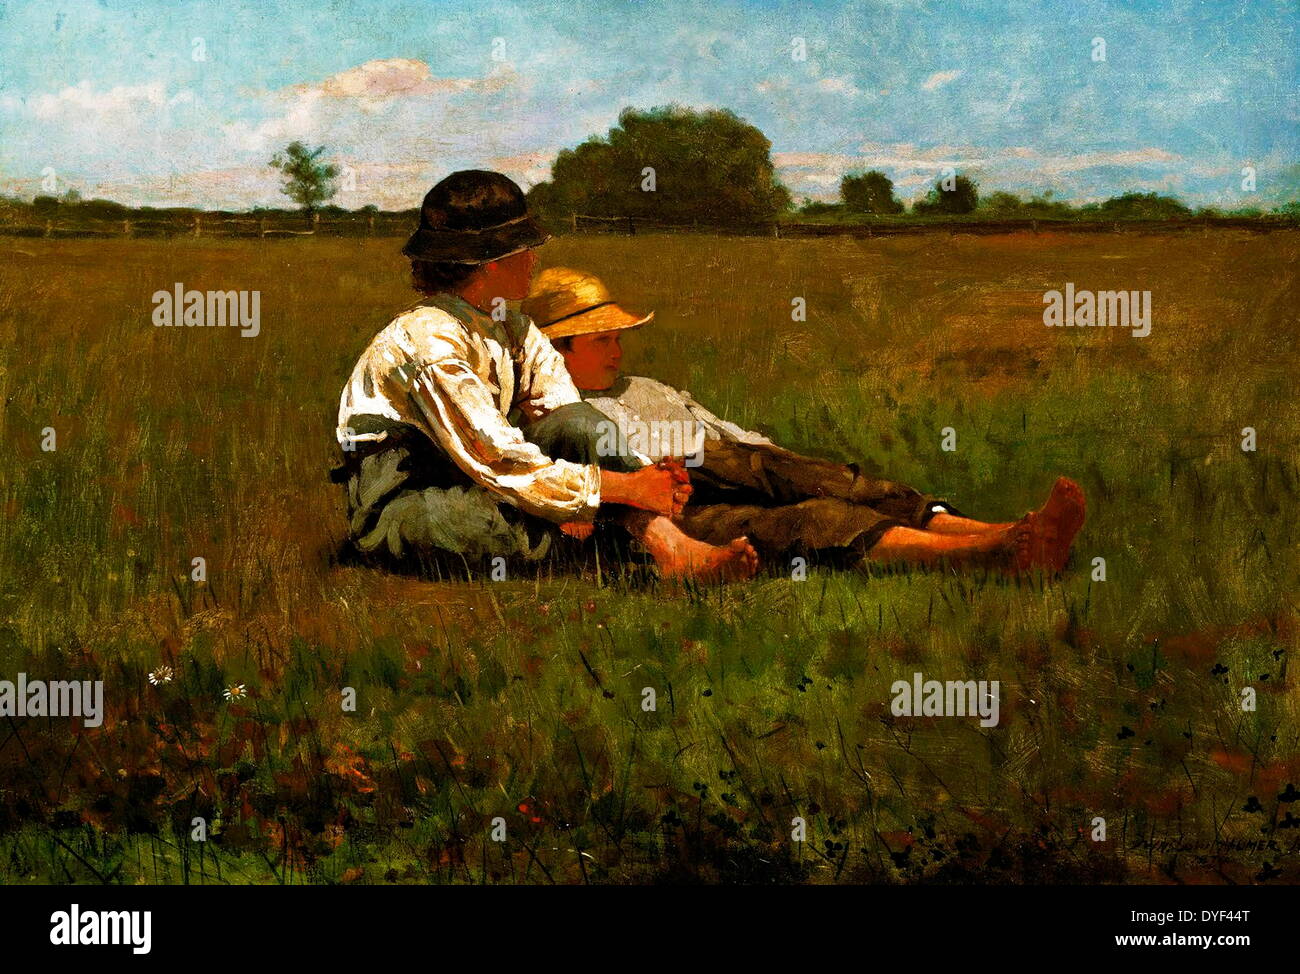 Jungen in einer Weide von Winslow Homer. Öl auf Leinwand, ca. Ende des 19., Anfang des 20. Jahrhunderts. Die amerikanische Künstlerin, die zwischen 1836-1910 lebte. Stockfoto